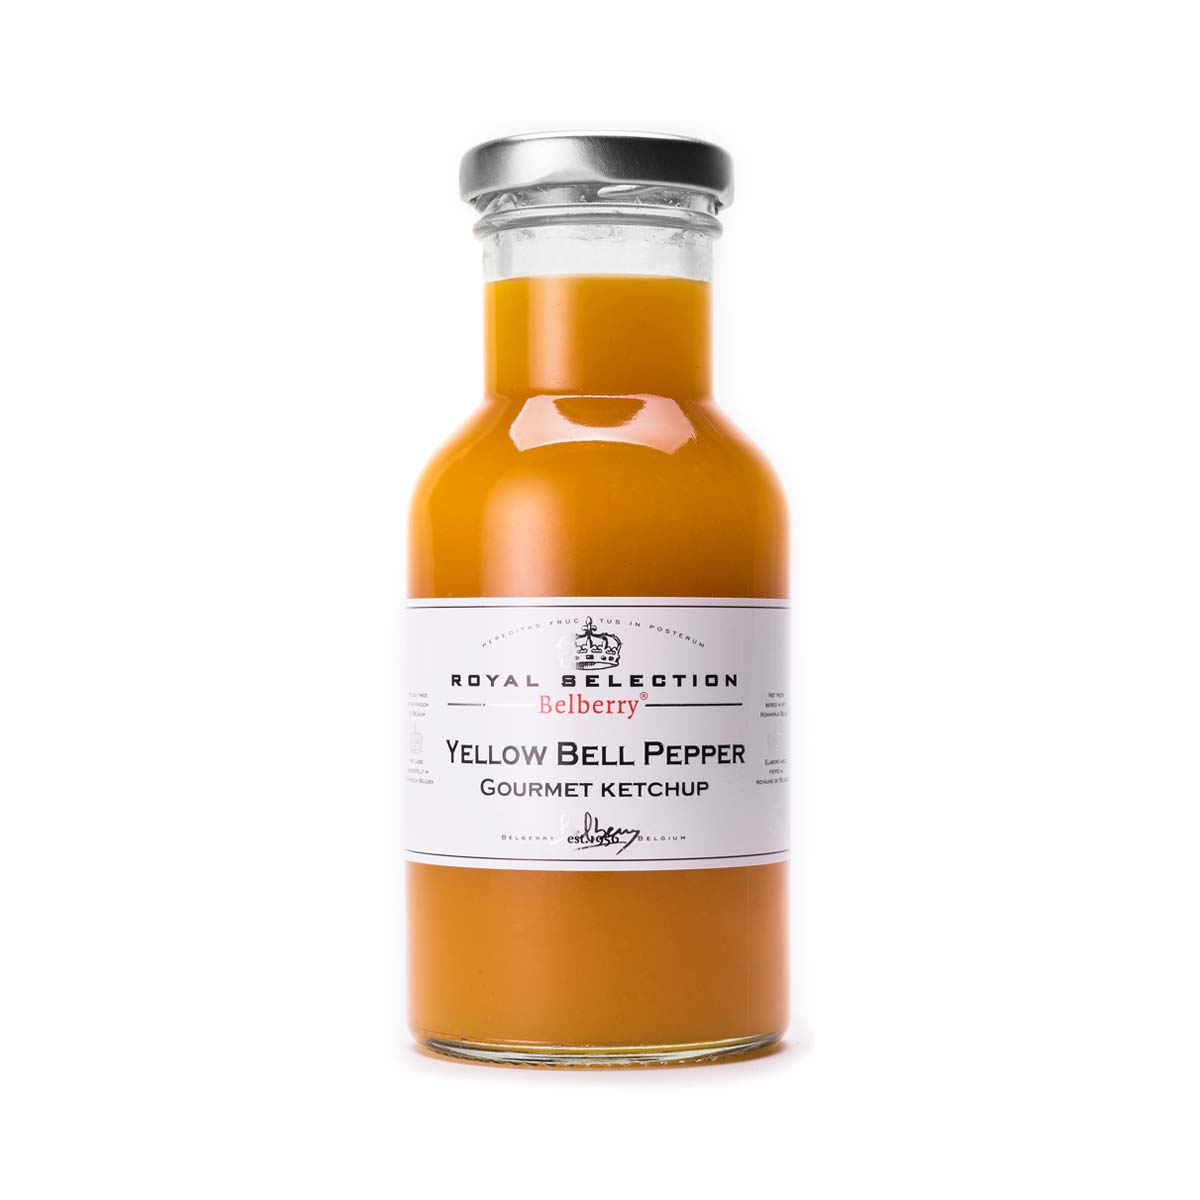 Yellow Bell Pepper Gourmet Ketchup